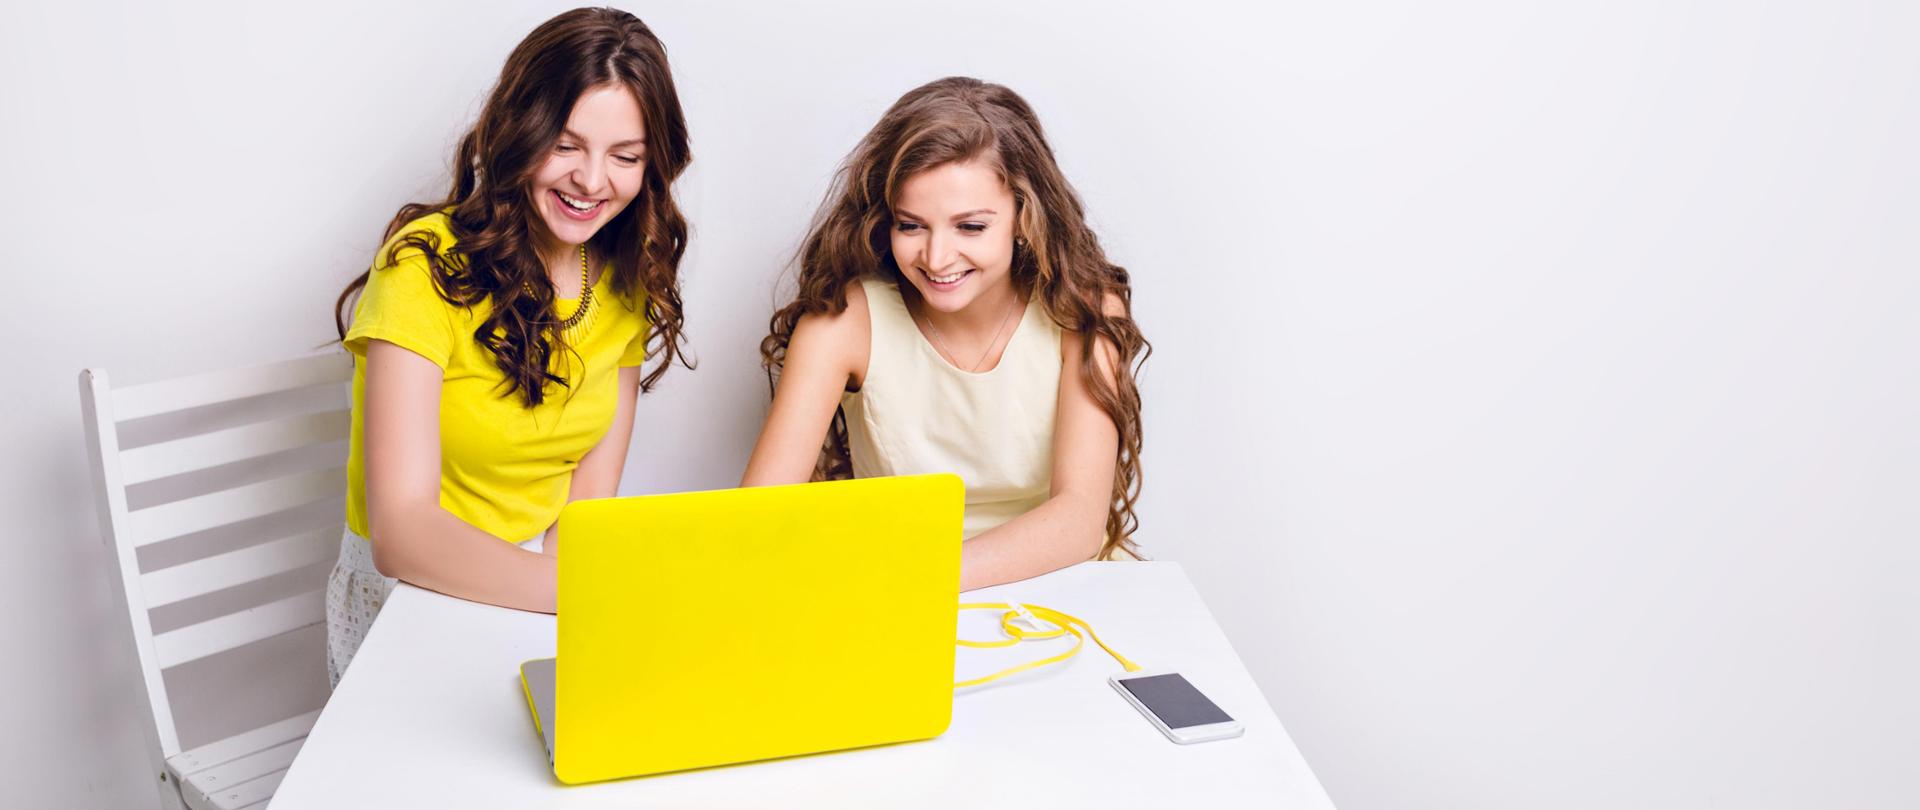 Dwie dziewczyny siedzą za laptopem w żółtej obudowie. Na stole leży smartfon ładowany za pomocą żółtego kabla. Obie dziewczyny uśmiechają się i patrzą na ekran. Jedna ma na sobie żółtą koszulkę, druga - sukienkę.